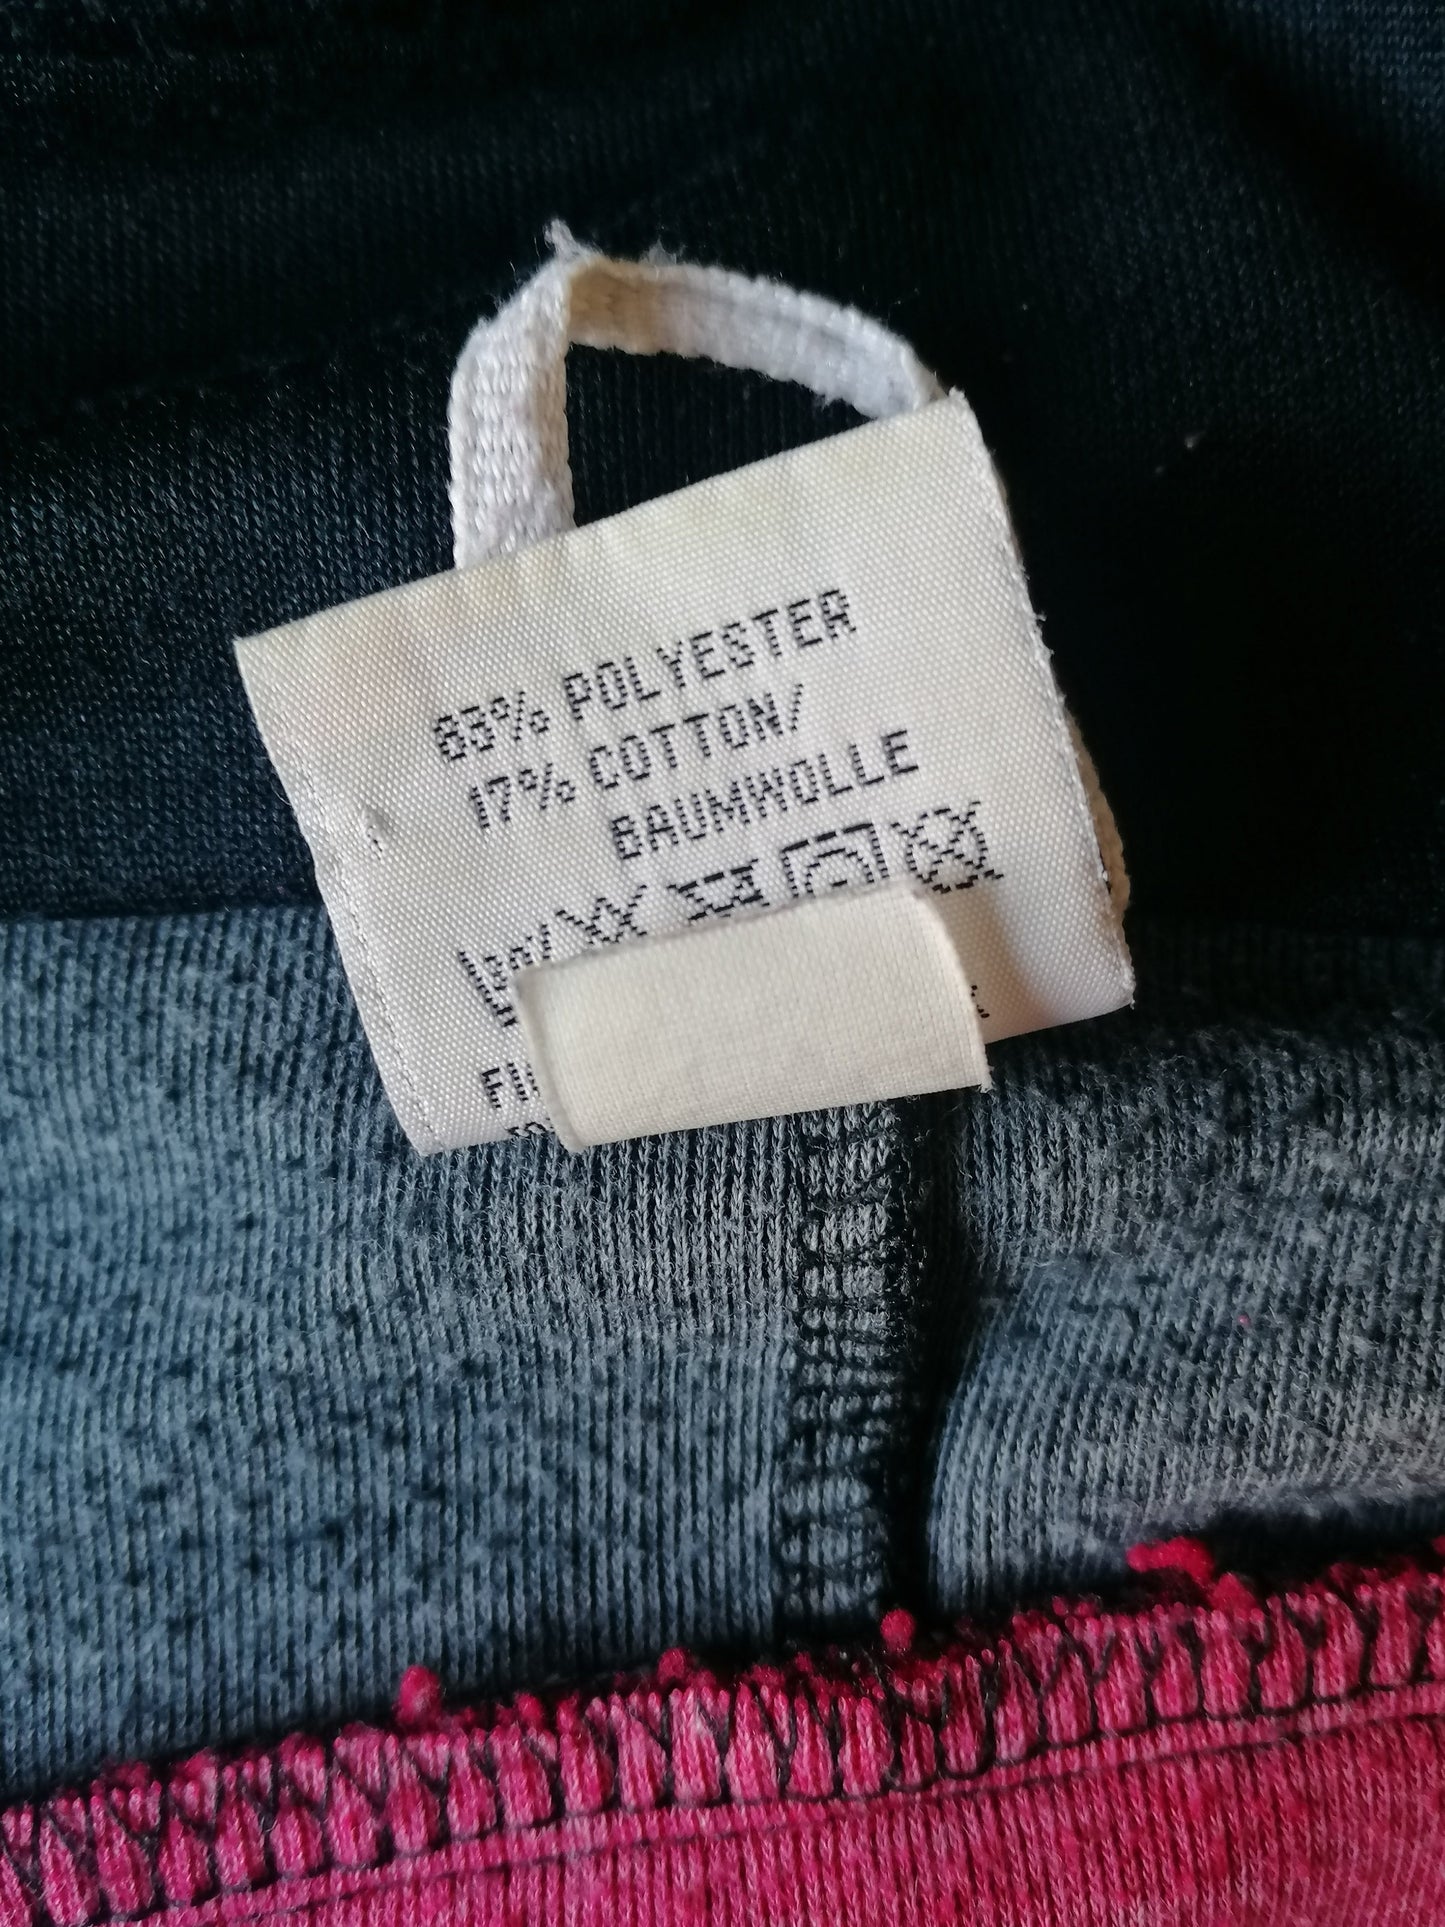 Suéter deportivo de Jako 80S-90 vintage con cremallera. Color rojo de color negro. De gran tamaño L / xxl.